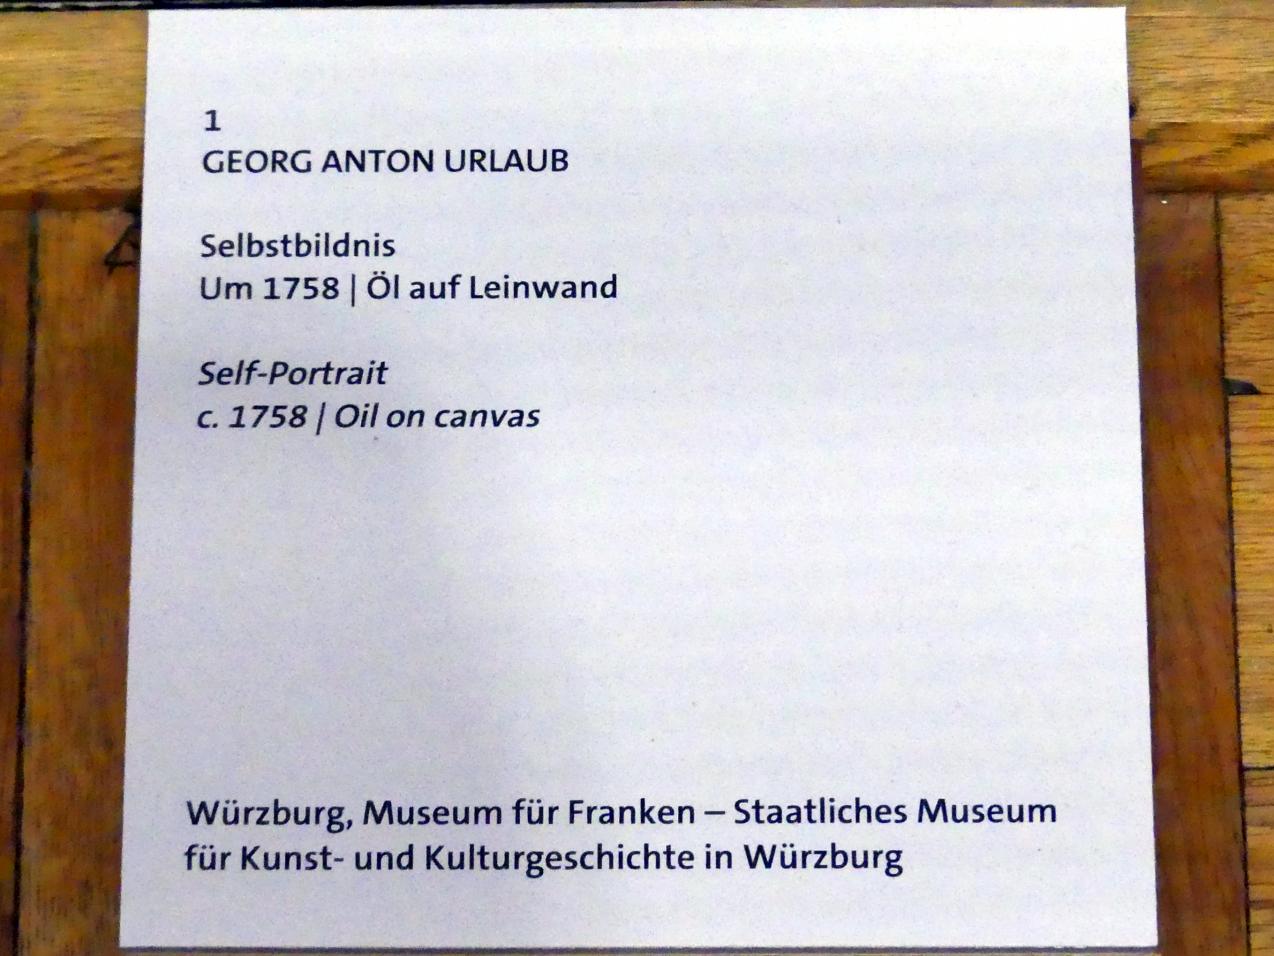 Georg Anton Urlaub (1735–1758), Selbstbildnis, Würzburg, Martin von Wagner Museum, Ausstellung "Tiepolo und seine Zeit in Würzburg" vom 31.10.2020-15.07.2021, Saal 1, um 1758, Bild 2/2